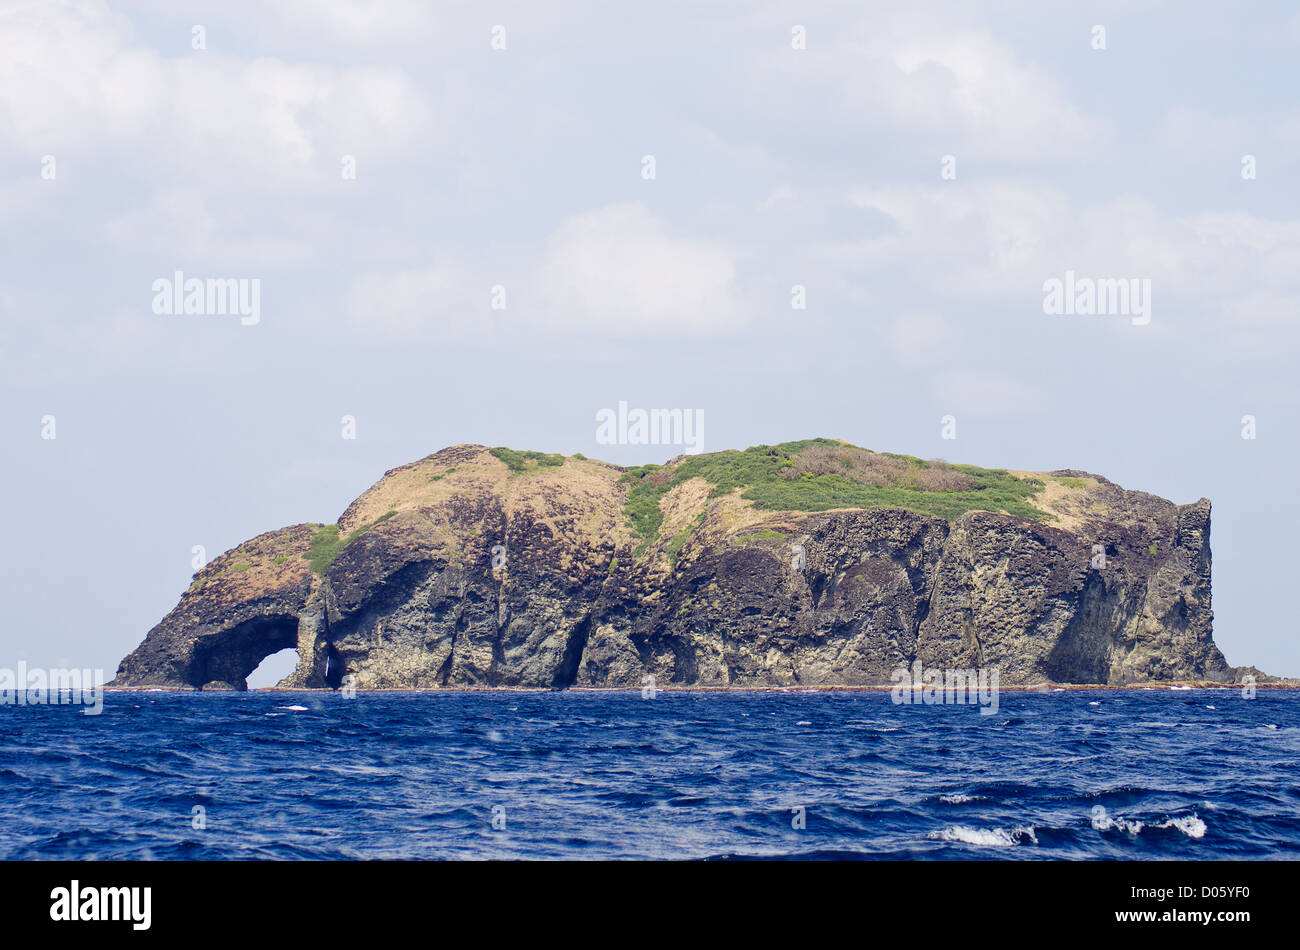 L'île de Tatsumi, une partie de l'île de Chichijima, groupe Ogasawara, Japon Banque D'Images